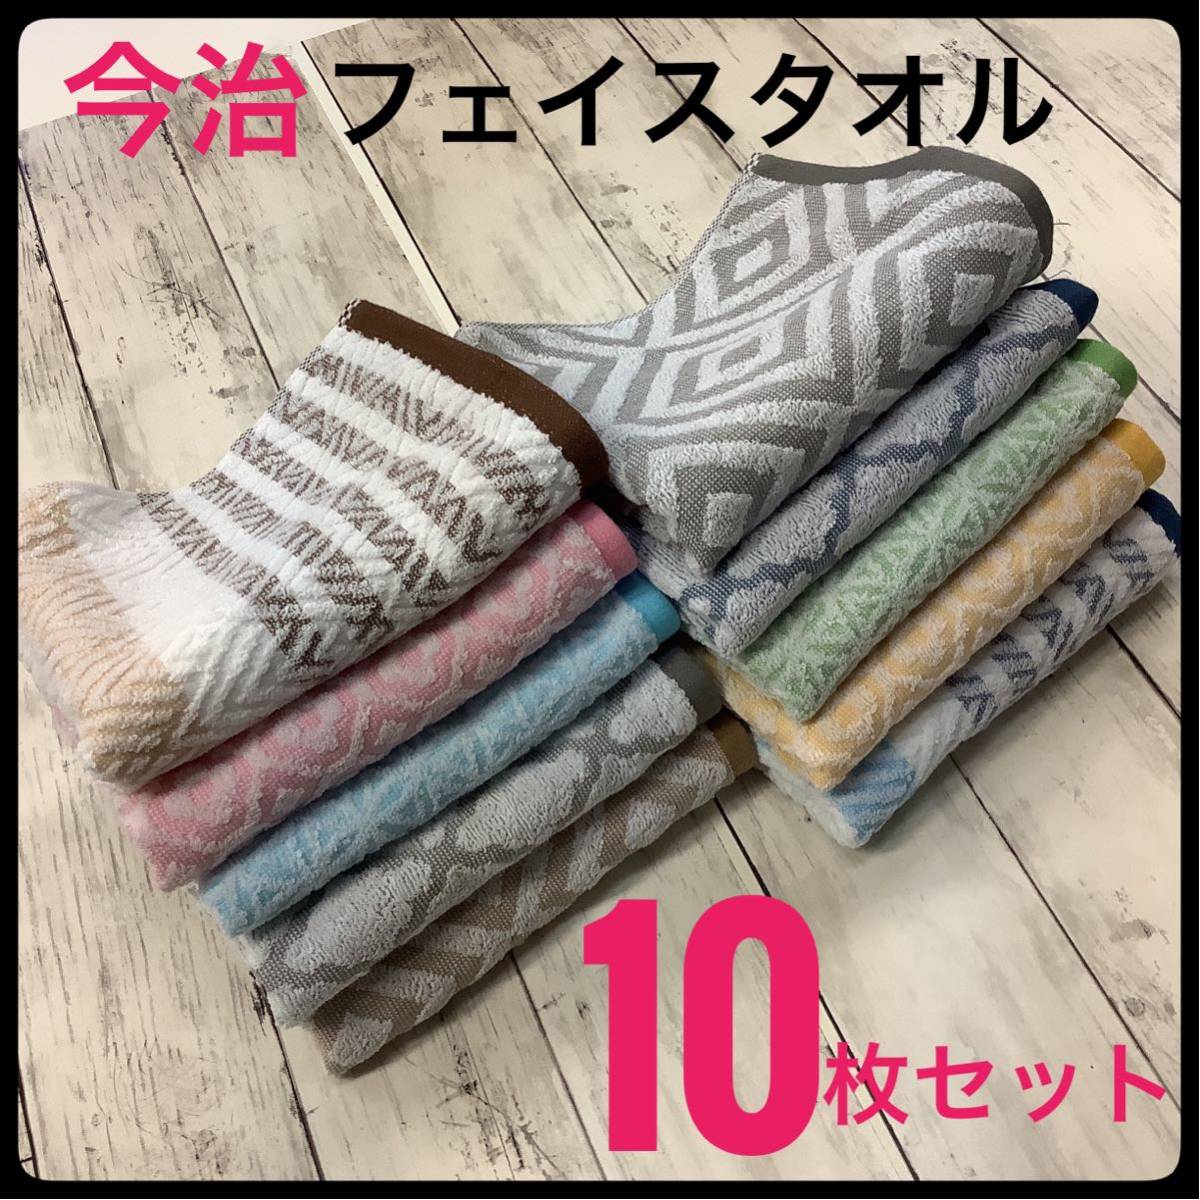  сейчас . полотенце полотенце для лица . для спорт продажа комплектом 10 шт. комплект сделано в Японии 5 рисунок 10 цвет 